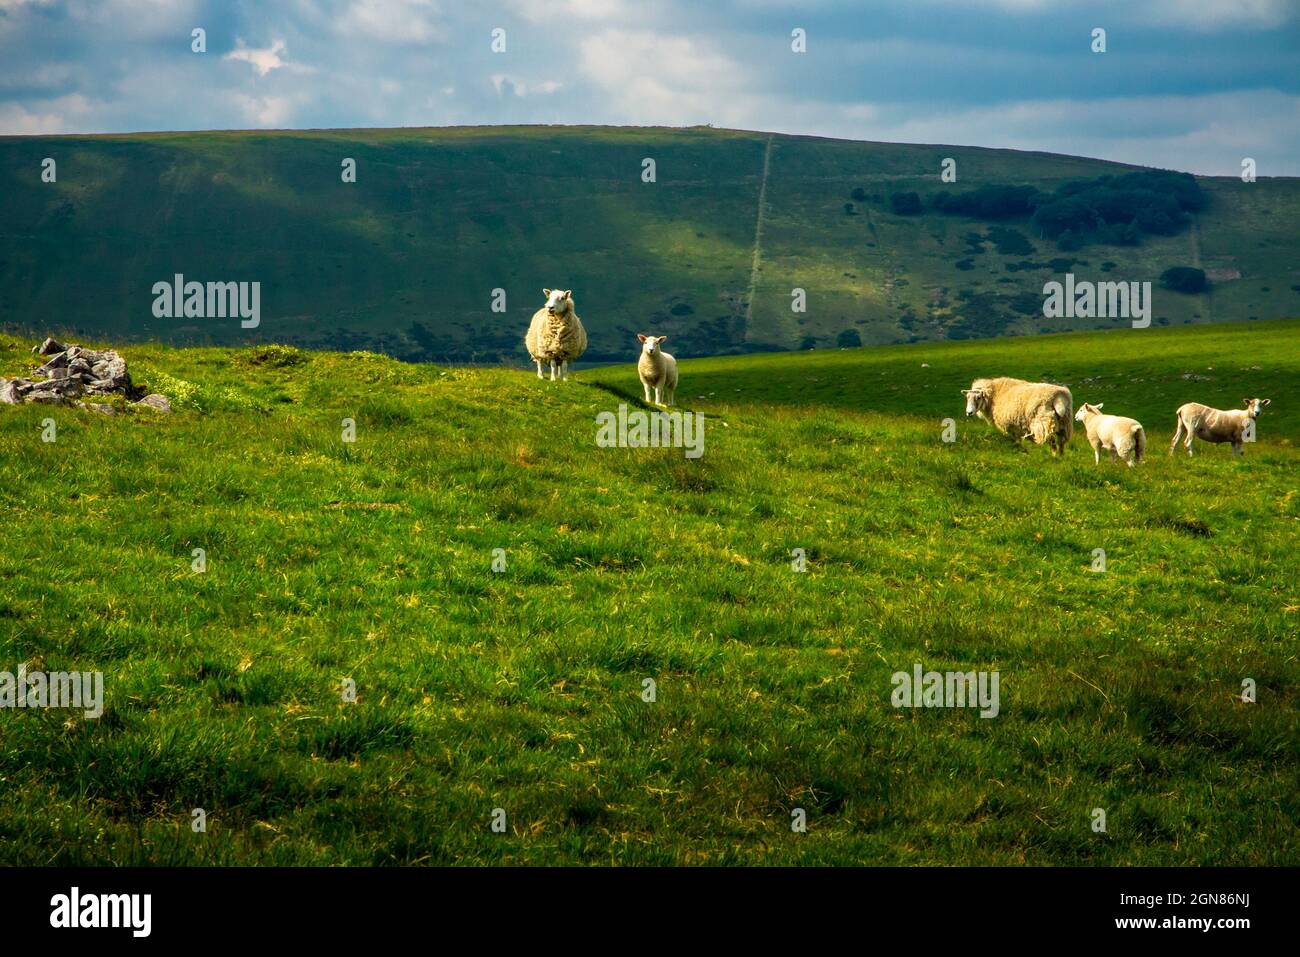 Moutons broutant dans les champs près de Castleton dans le parc national de Peak District Derbyshire Angleterre Royaume-Uni Banque D'Images